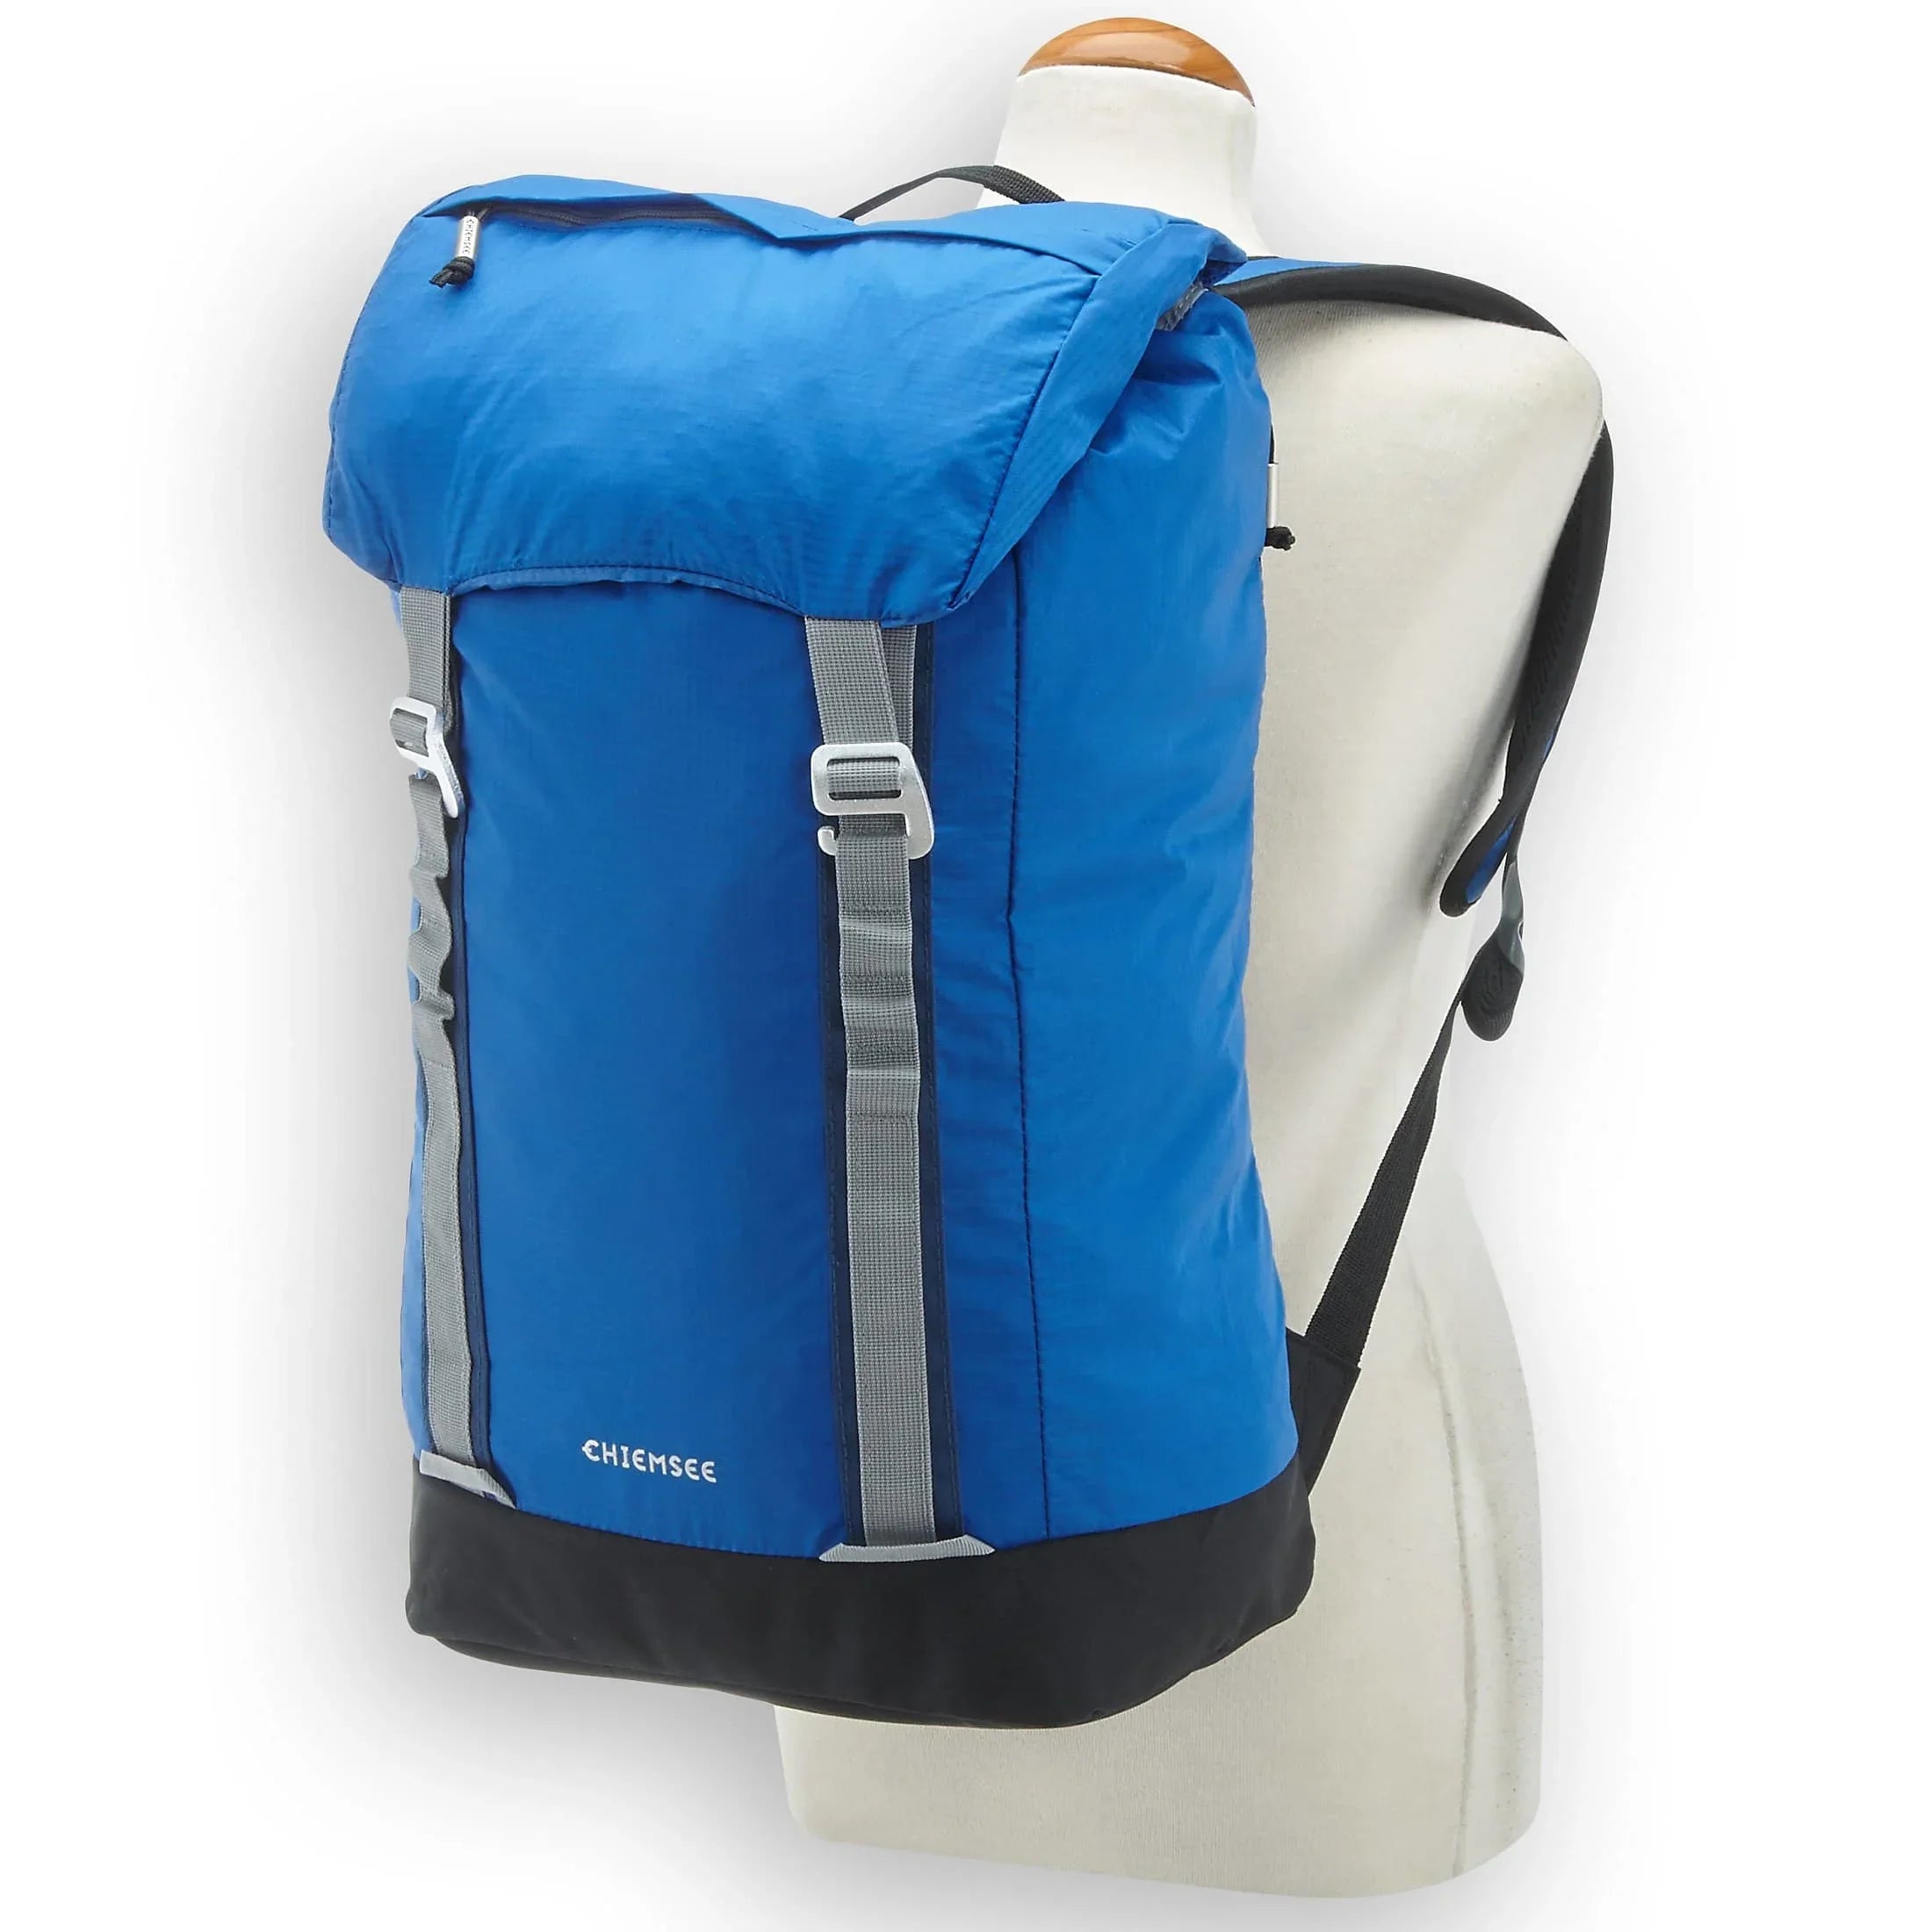 Chiemsee Sacs de sport et de voyage Daypack Sac à dos 50 cm - sodalite blu